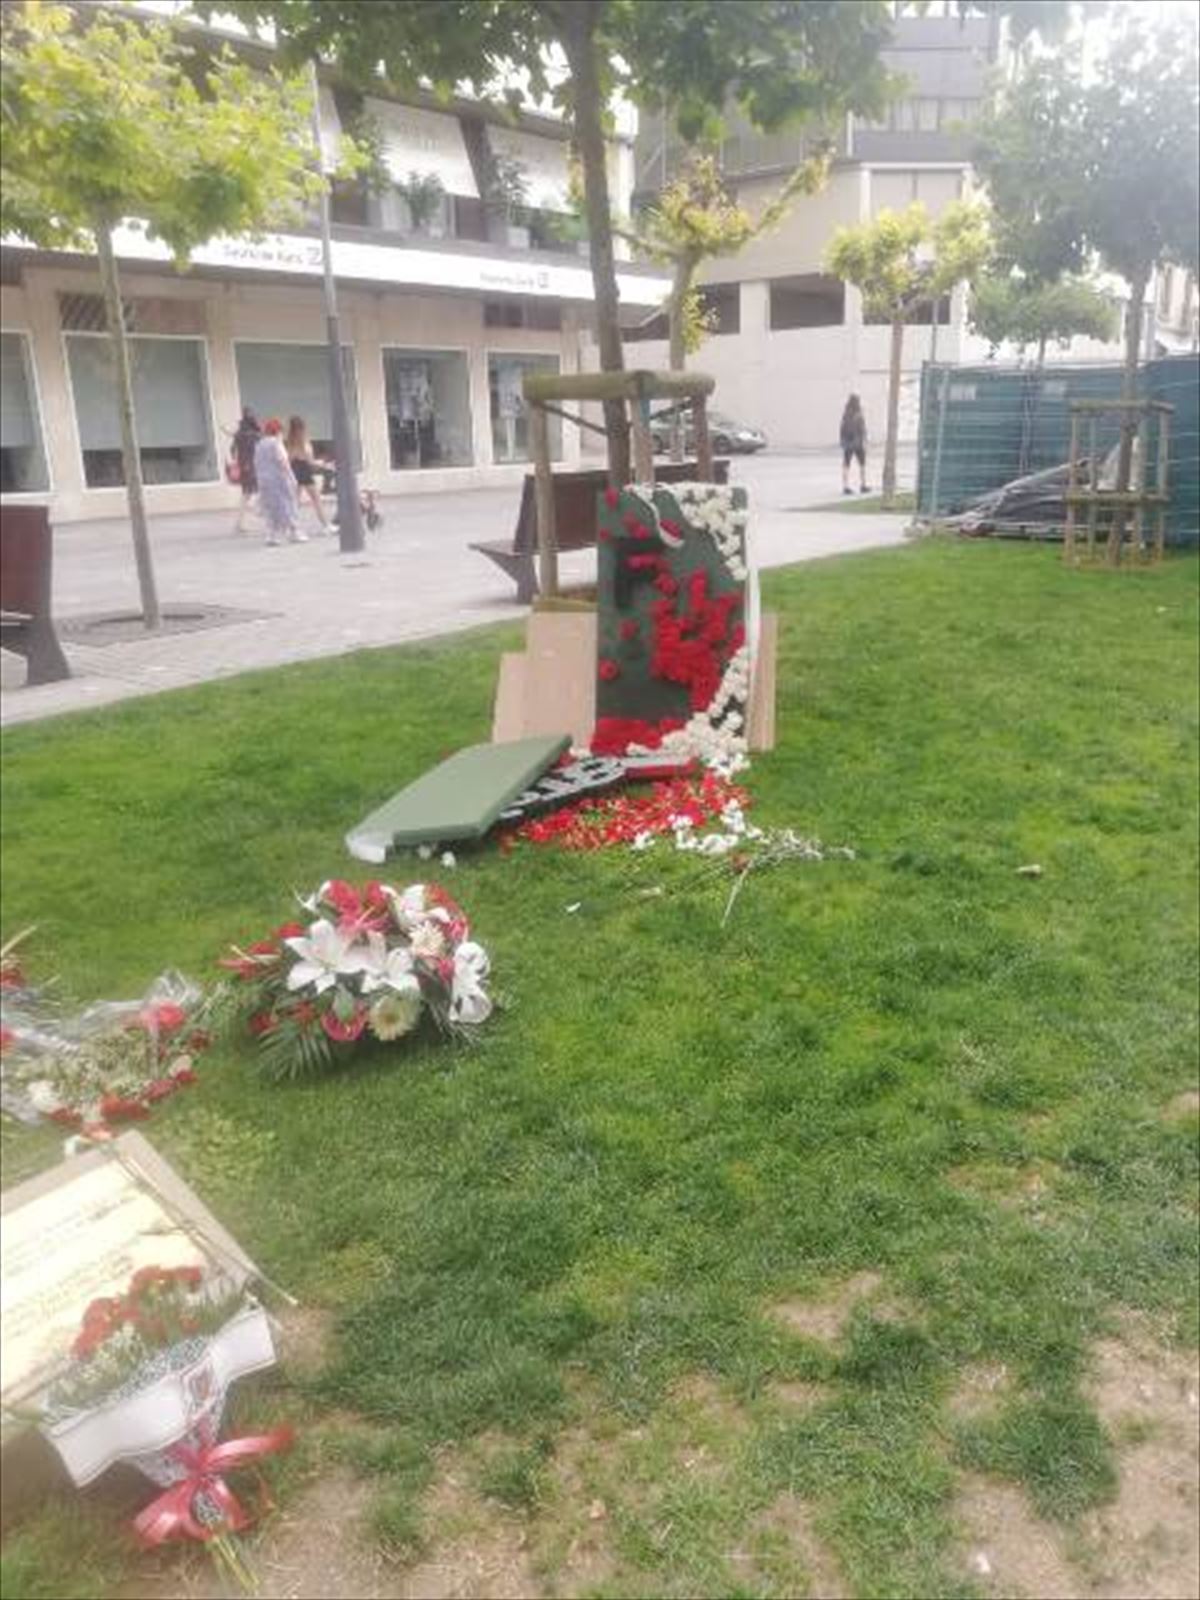 Las consecuencias del ataque al monumento en Pamplona. Foto: San Fermines 78 Gogoan